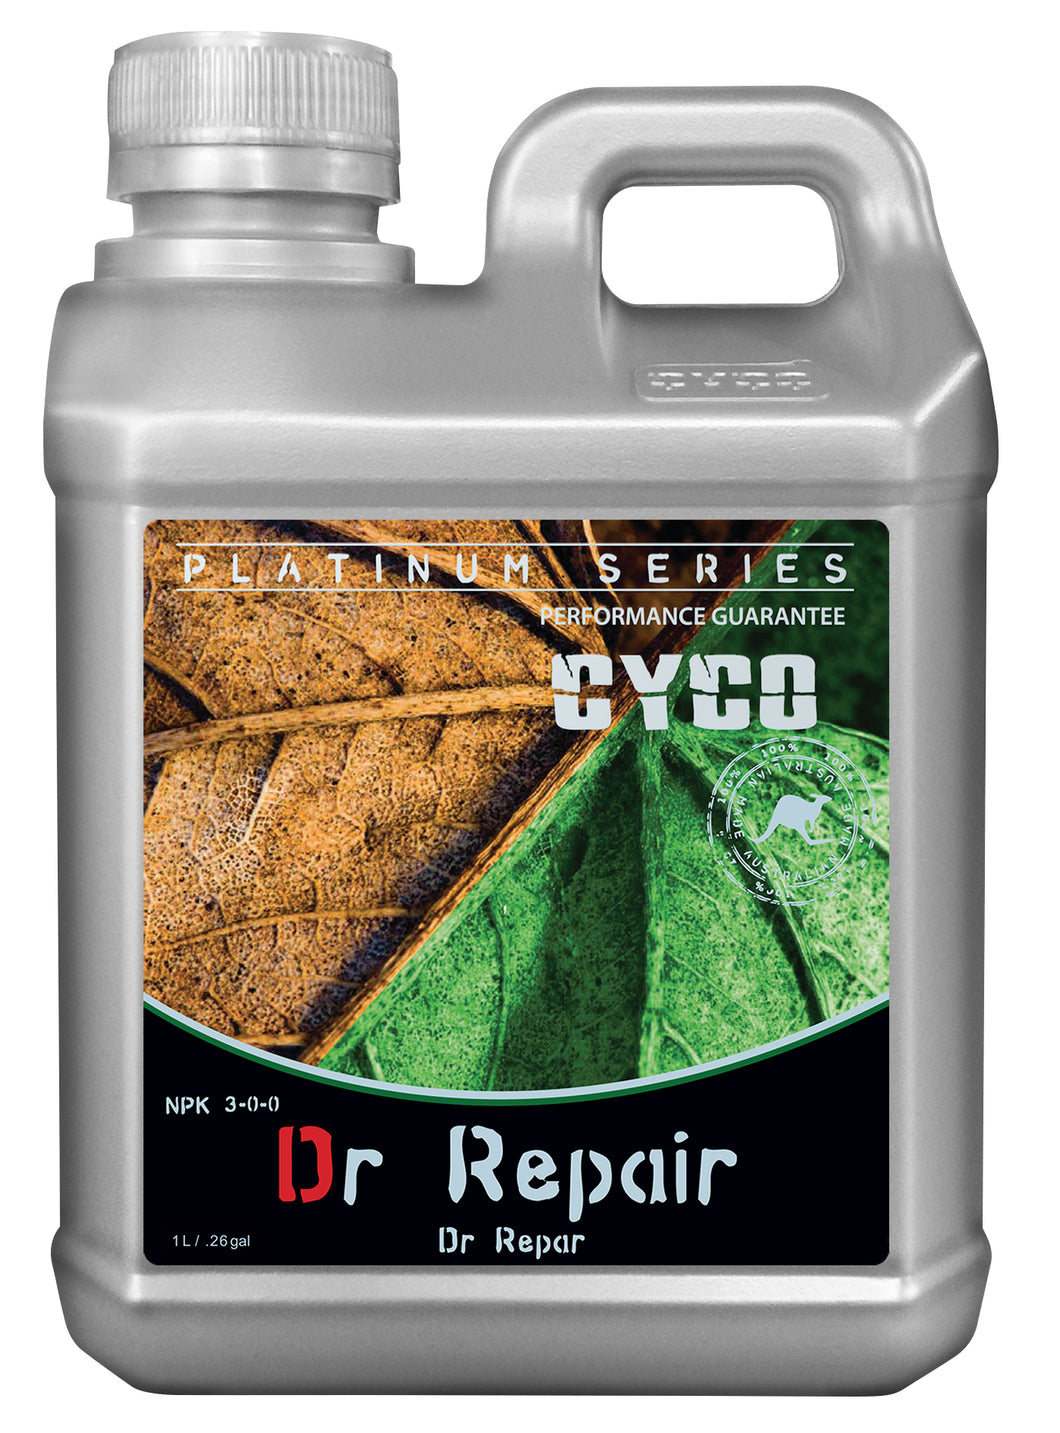 CYCO Dr. Repair